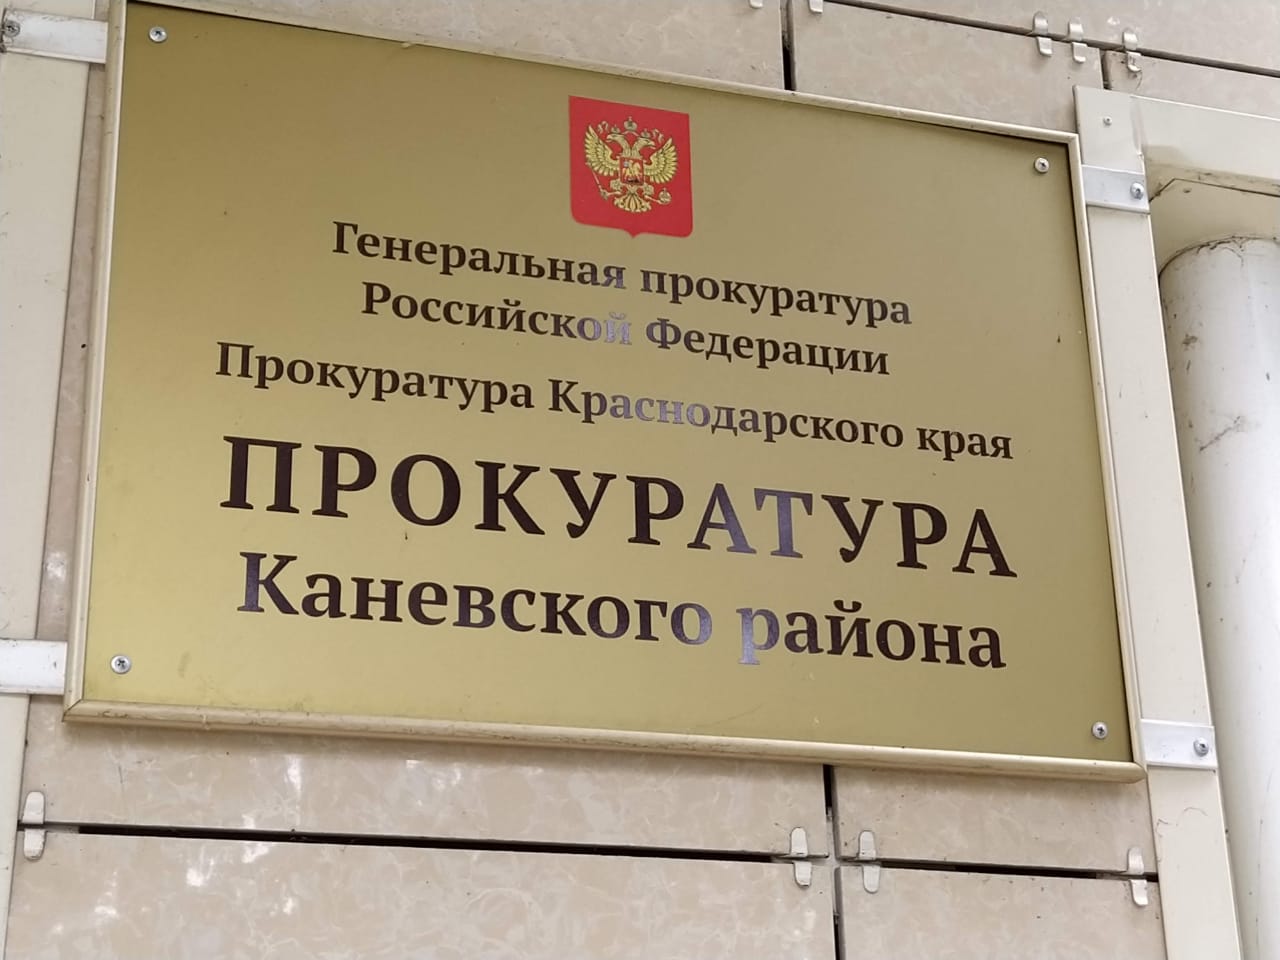 Прокуратурой в 2020 году приняты меры к устранению и недопущению нарушений законодательства при осуществлении закупок на территории Каневского района